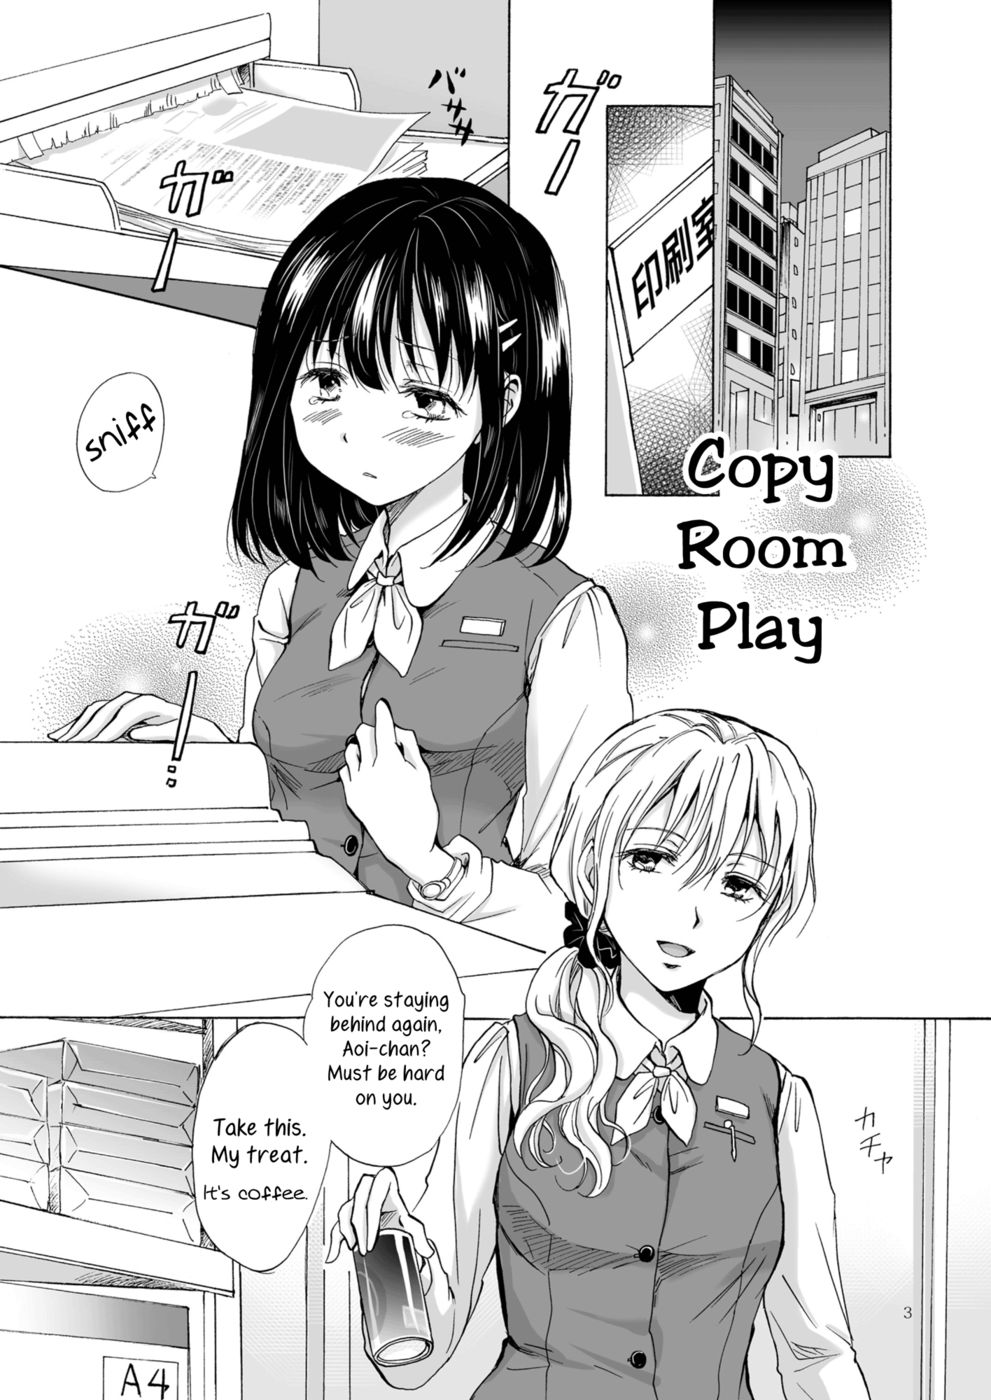 Hentai Manga Comic-Copy Room Play-Read-2